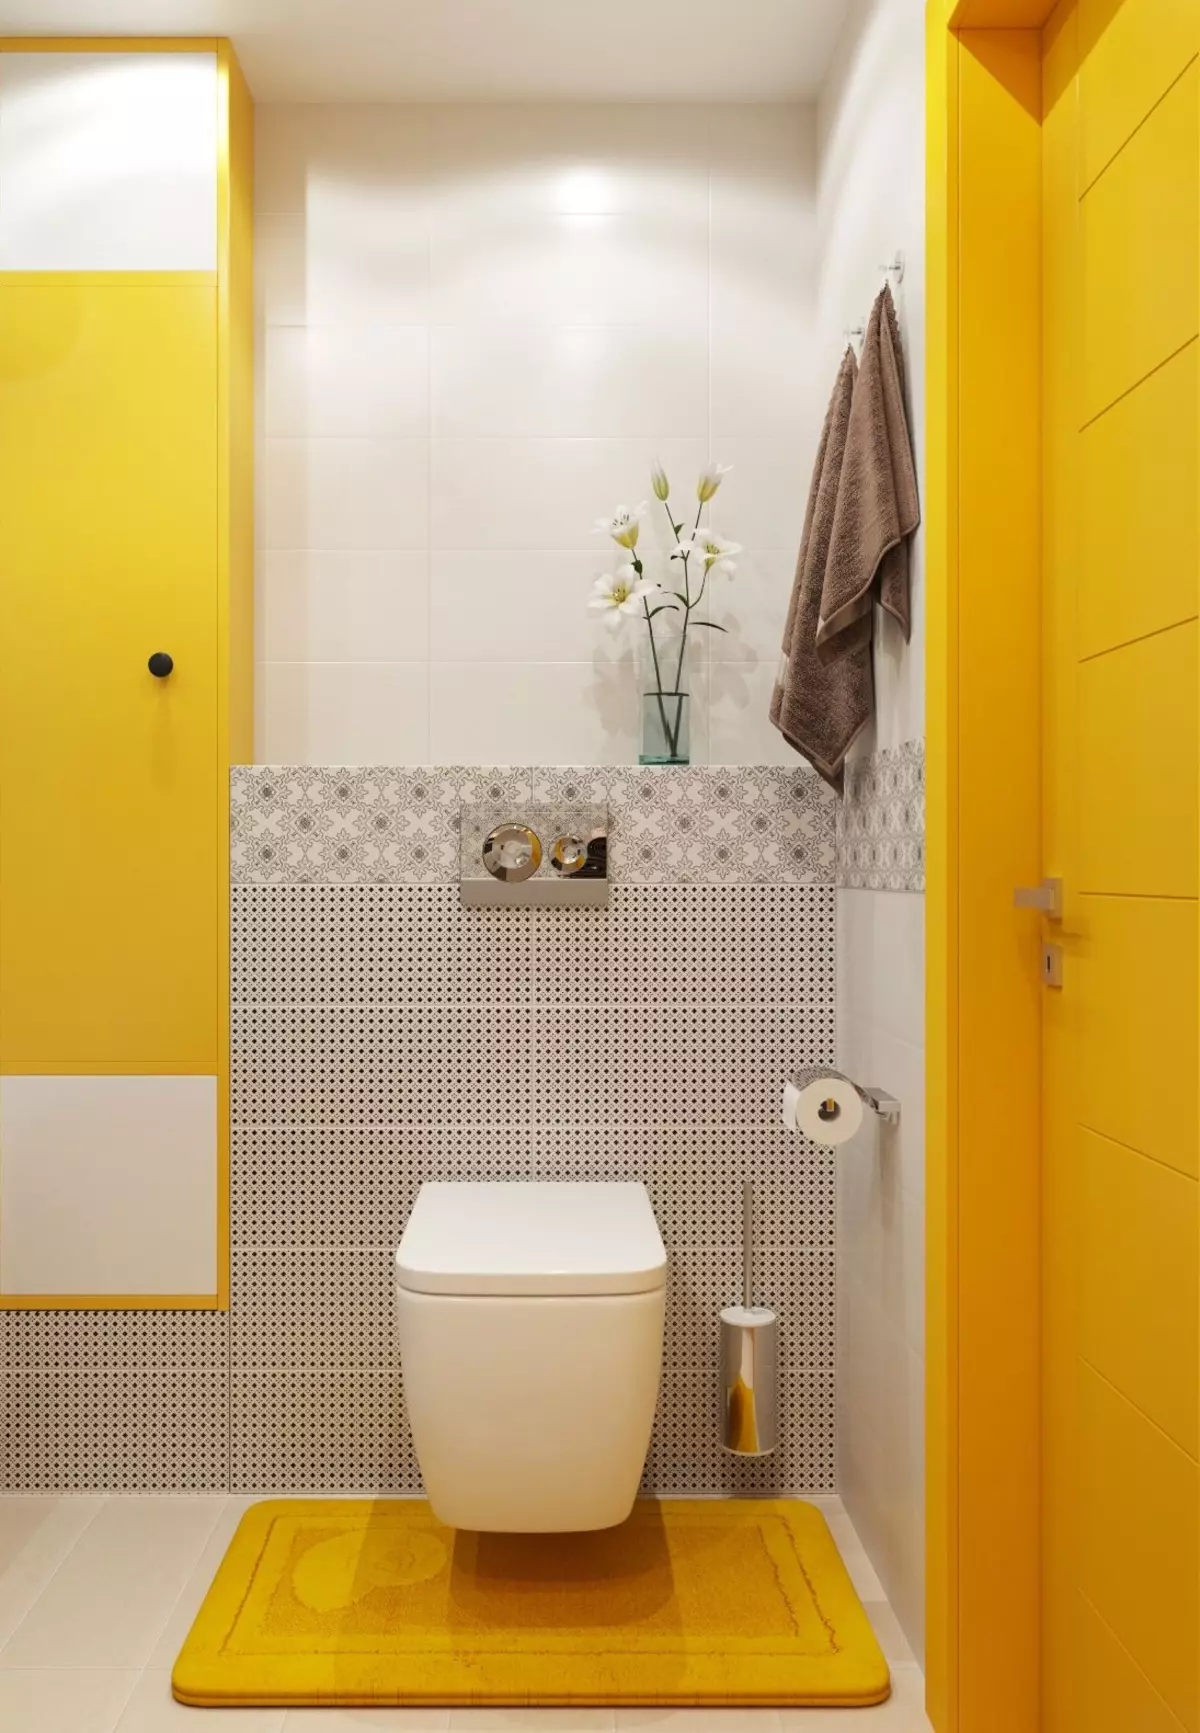 Фото маленьких санузлов. Ванная в желтом цвете. Интерьер туалета. Красивые туалетные комнаты. Красивый туалет в квартире.